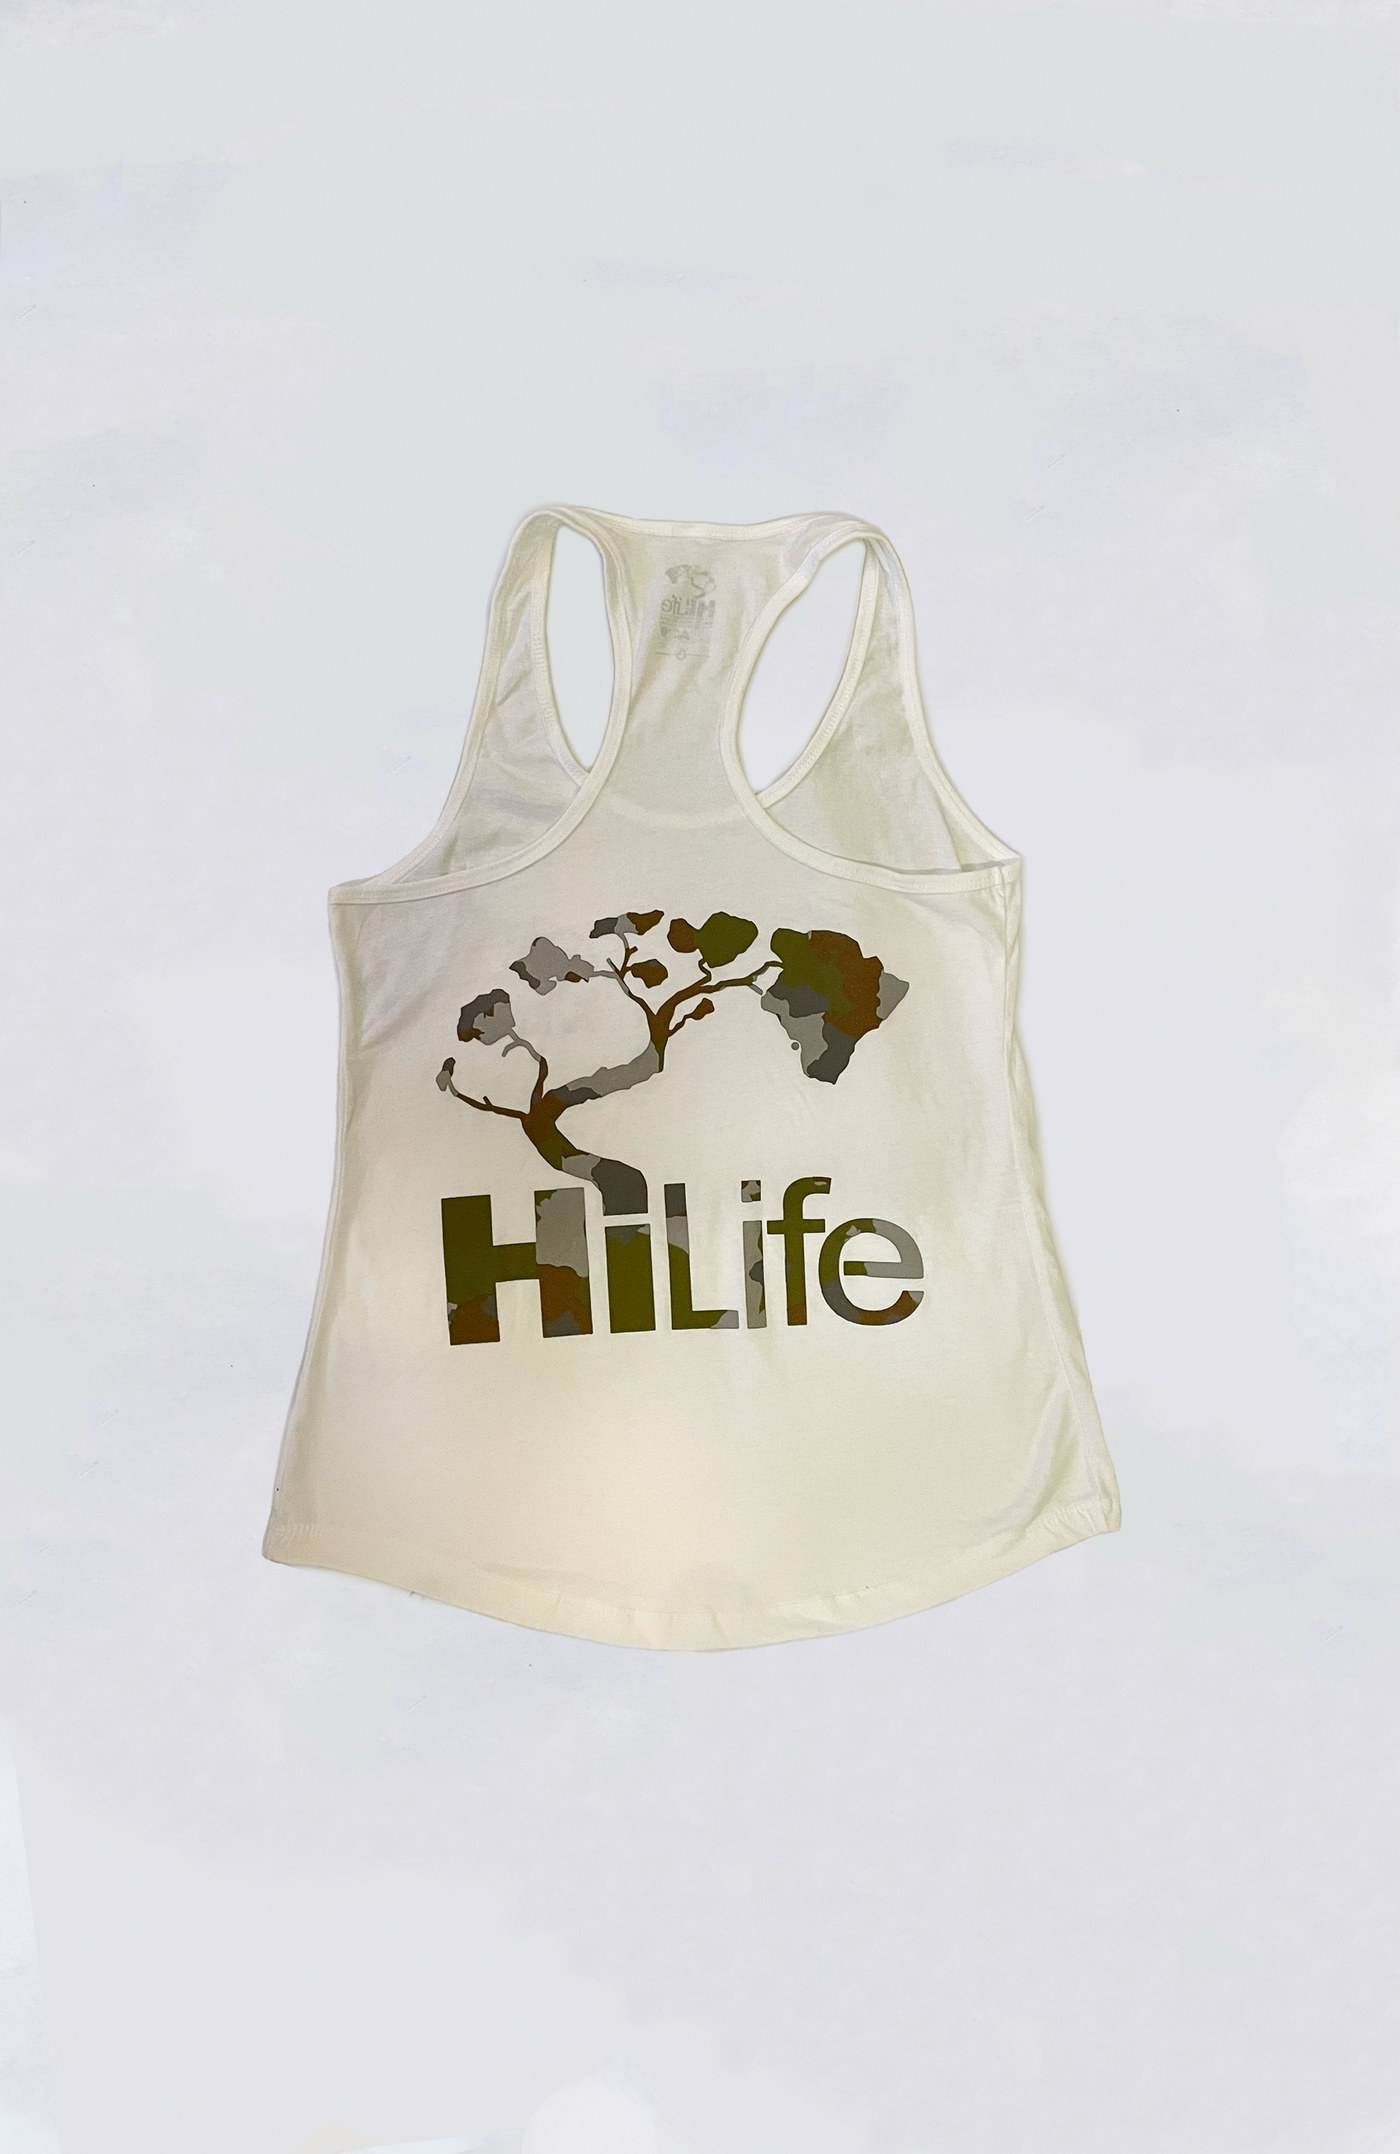 HiLife - Women's HiLife Camo Racerback Tank